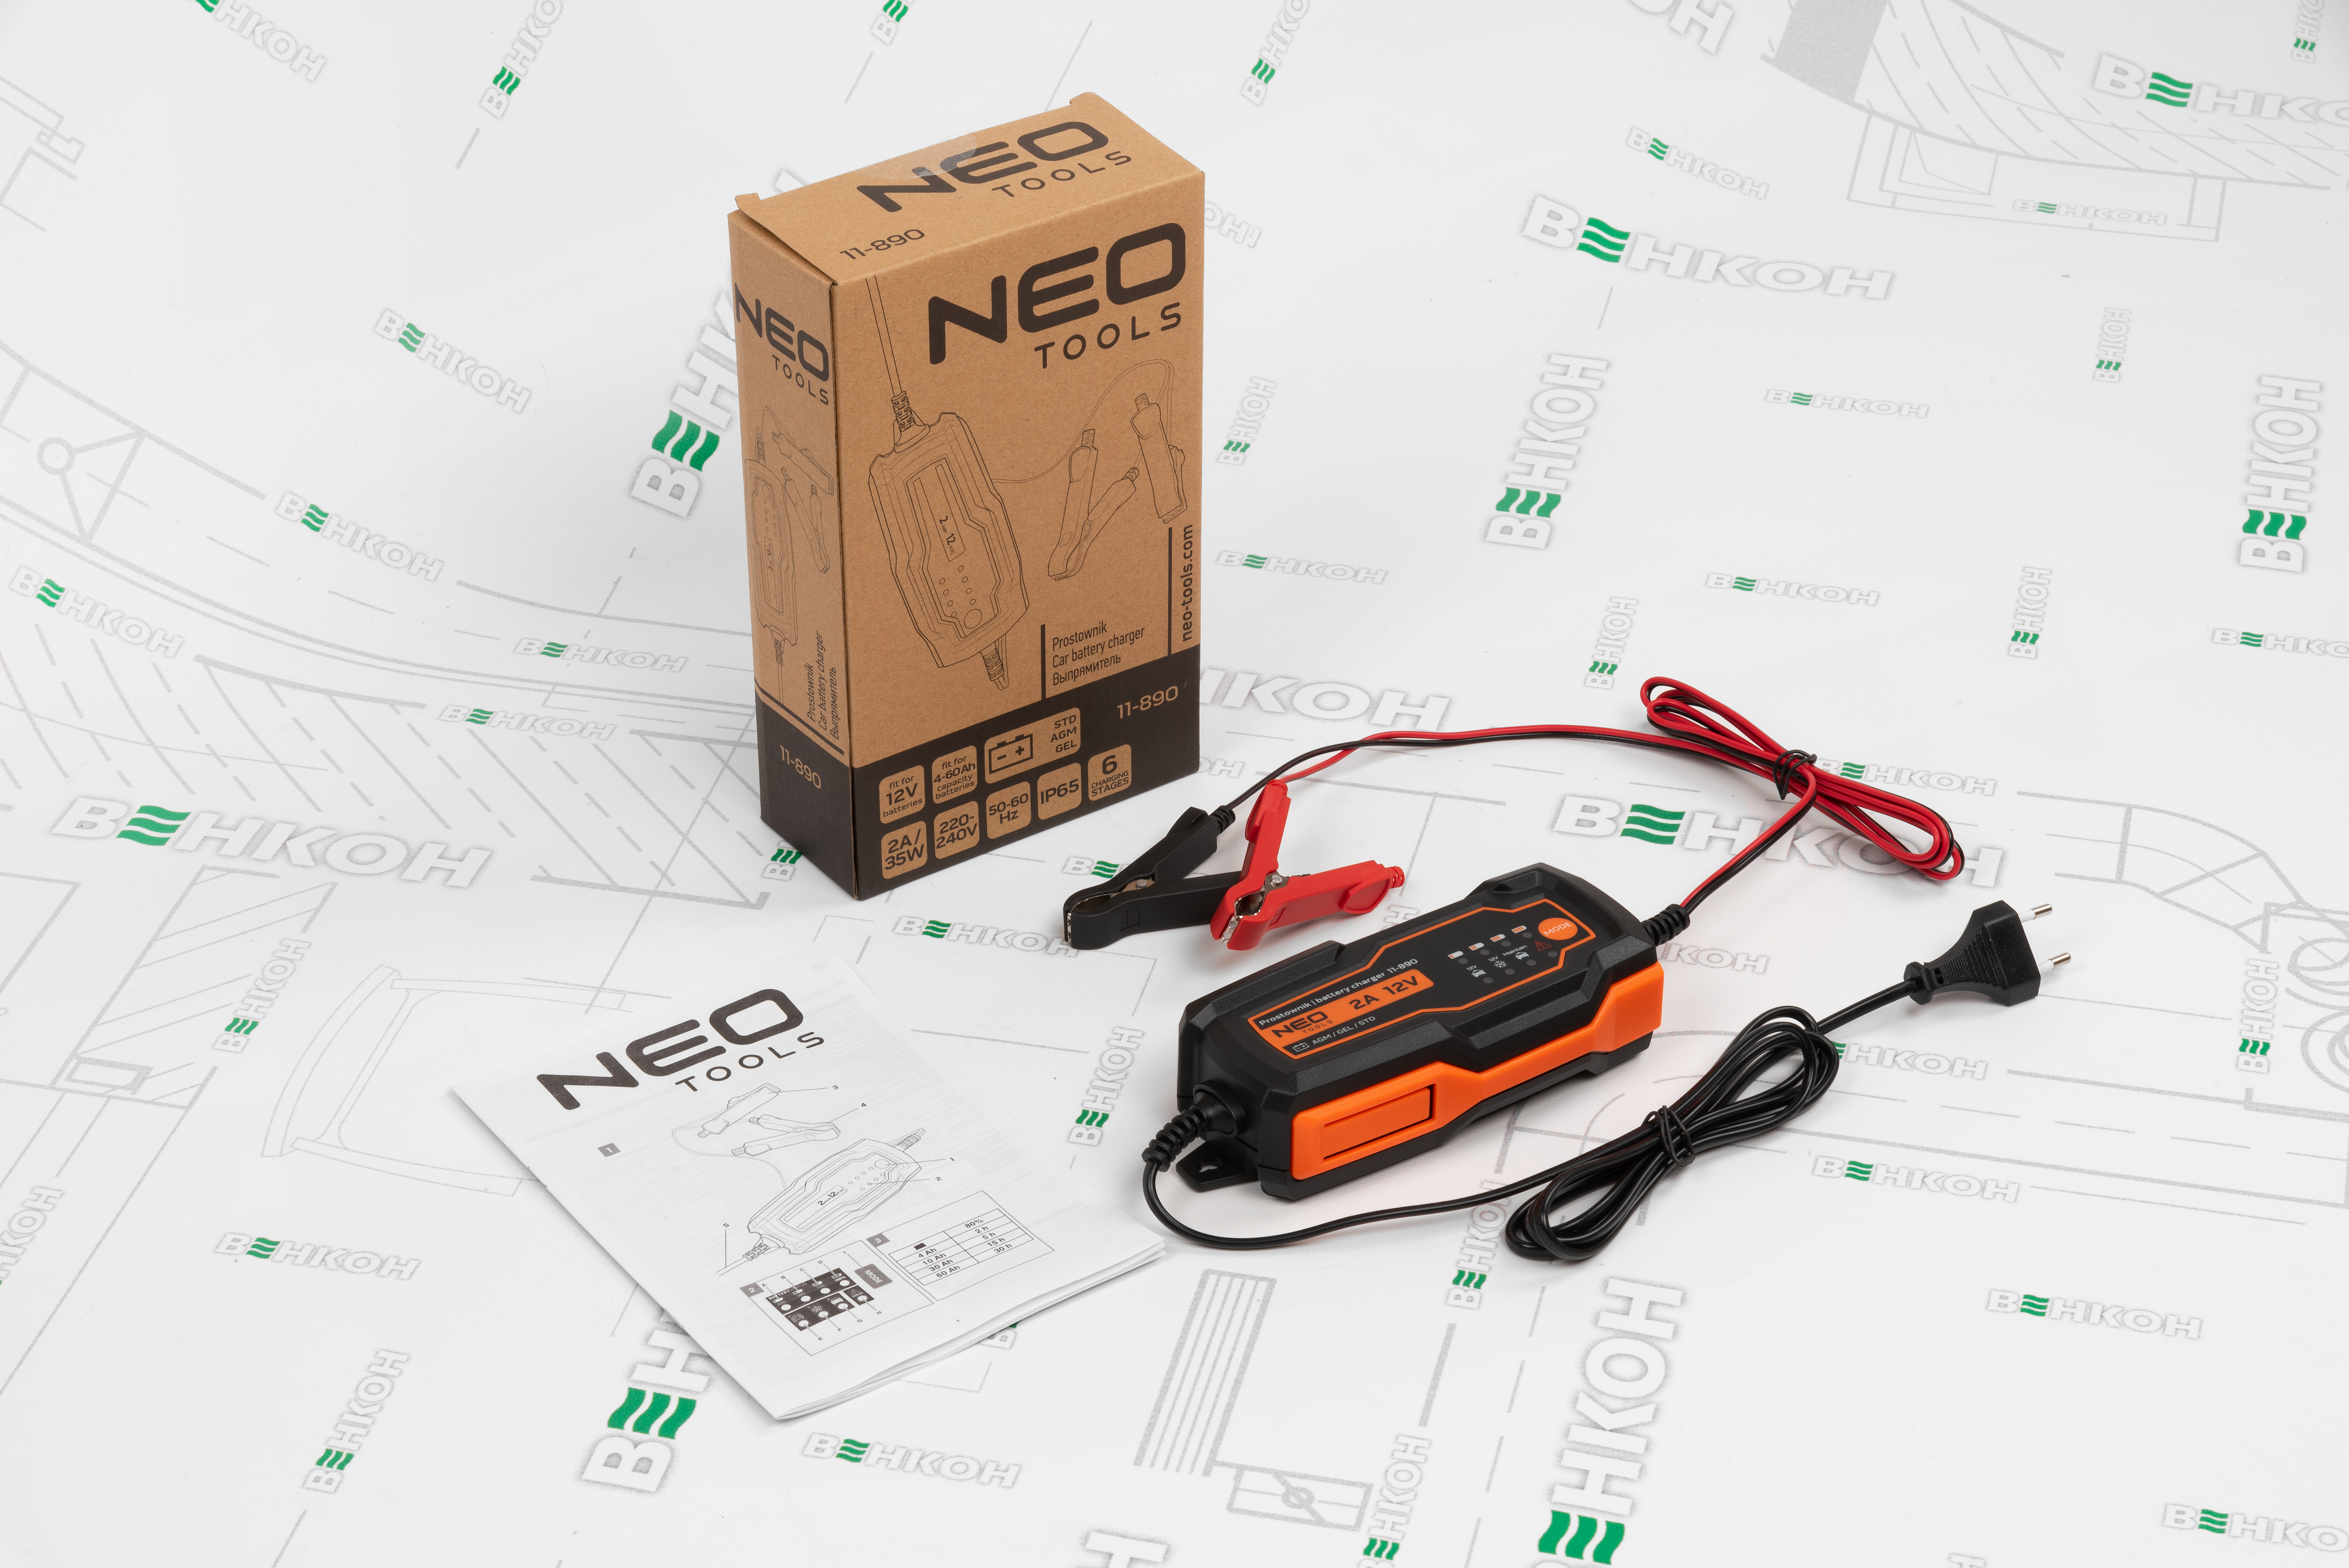 Автомобильно зарядное устройство Neo Tools 11-890 обзор - фото 8